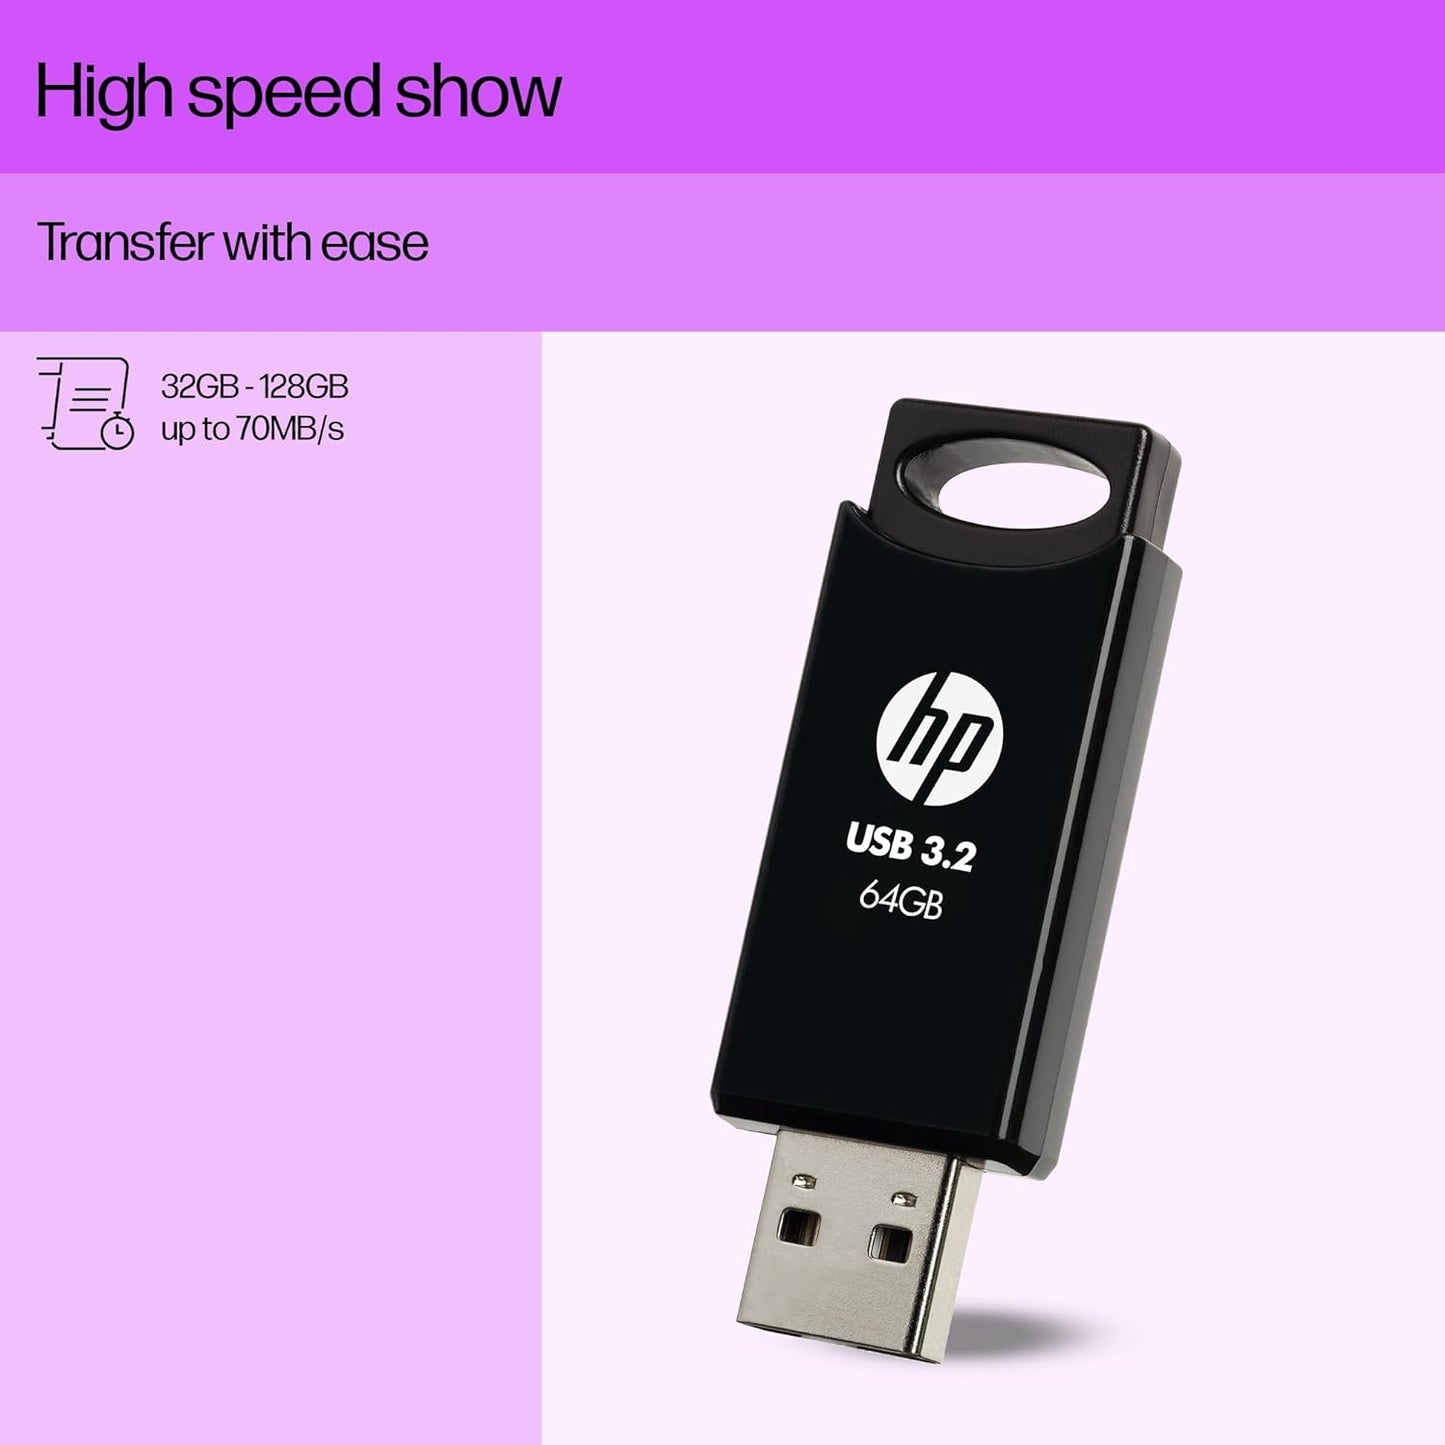 HP 64 GB 712w USB 3.2 Flash Drive - Black